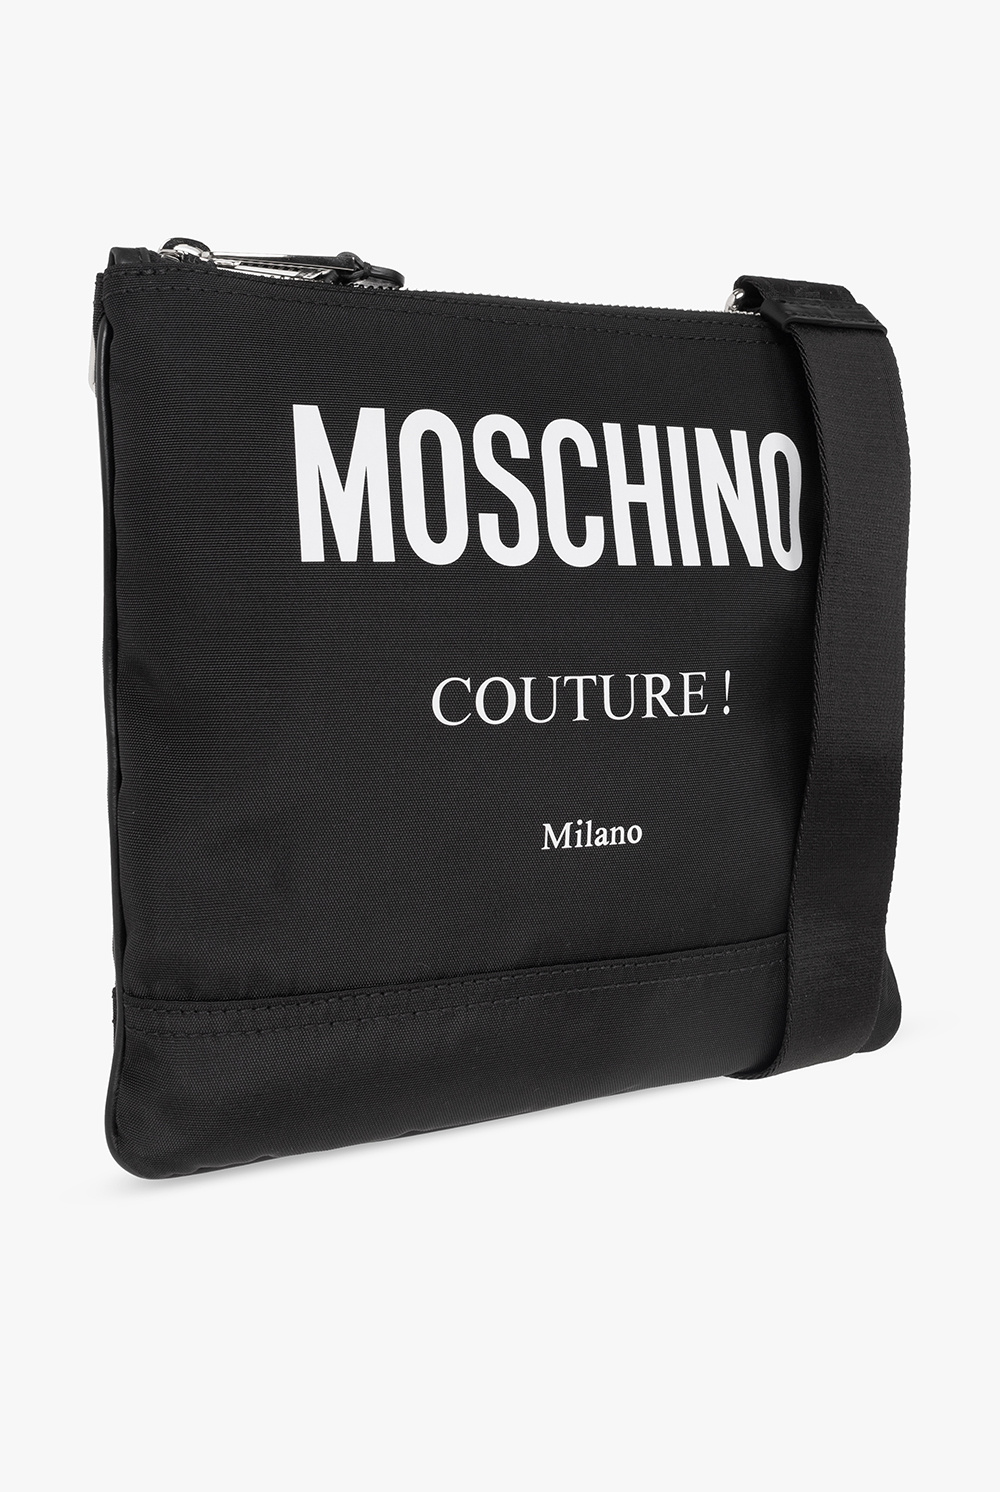 Moschino Un nouveau tote bag Gucci x COMME des GARÇONS